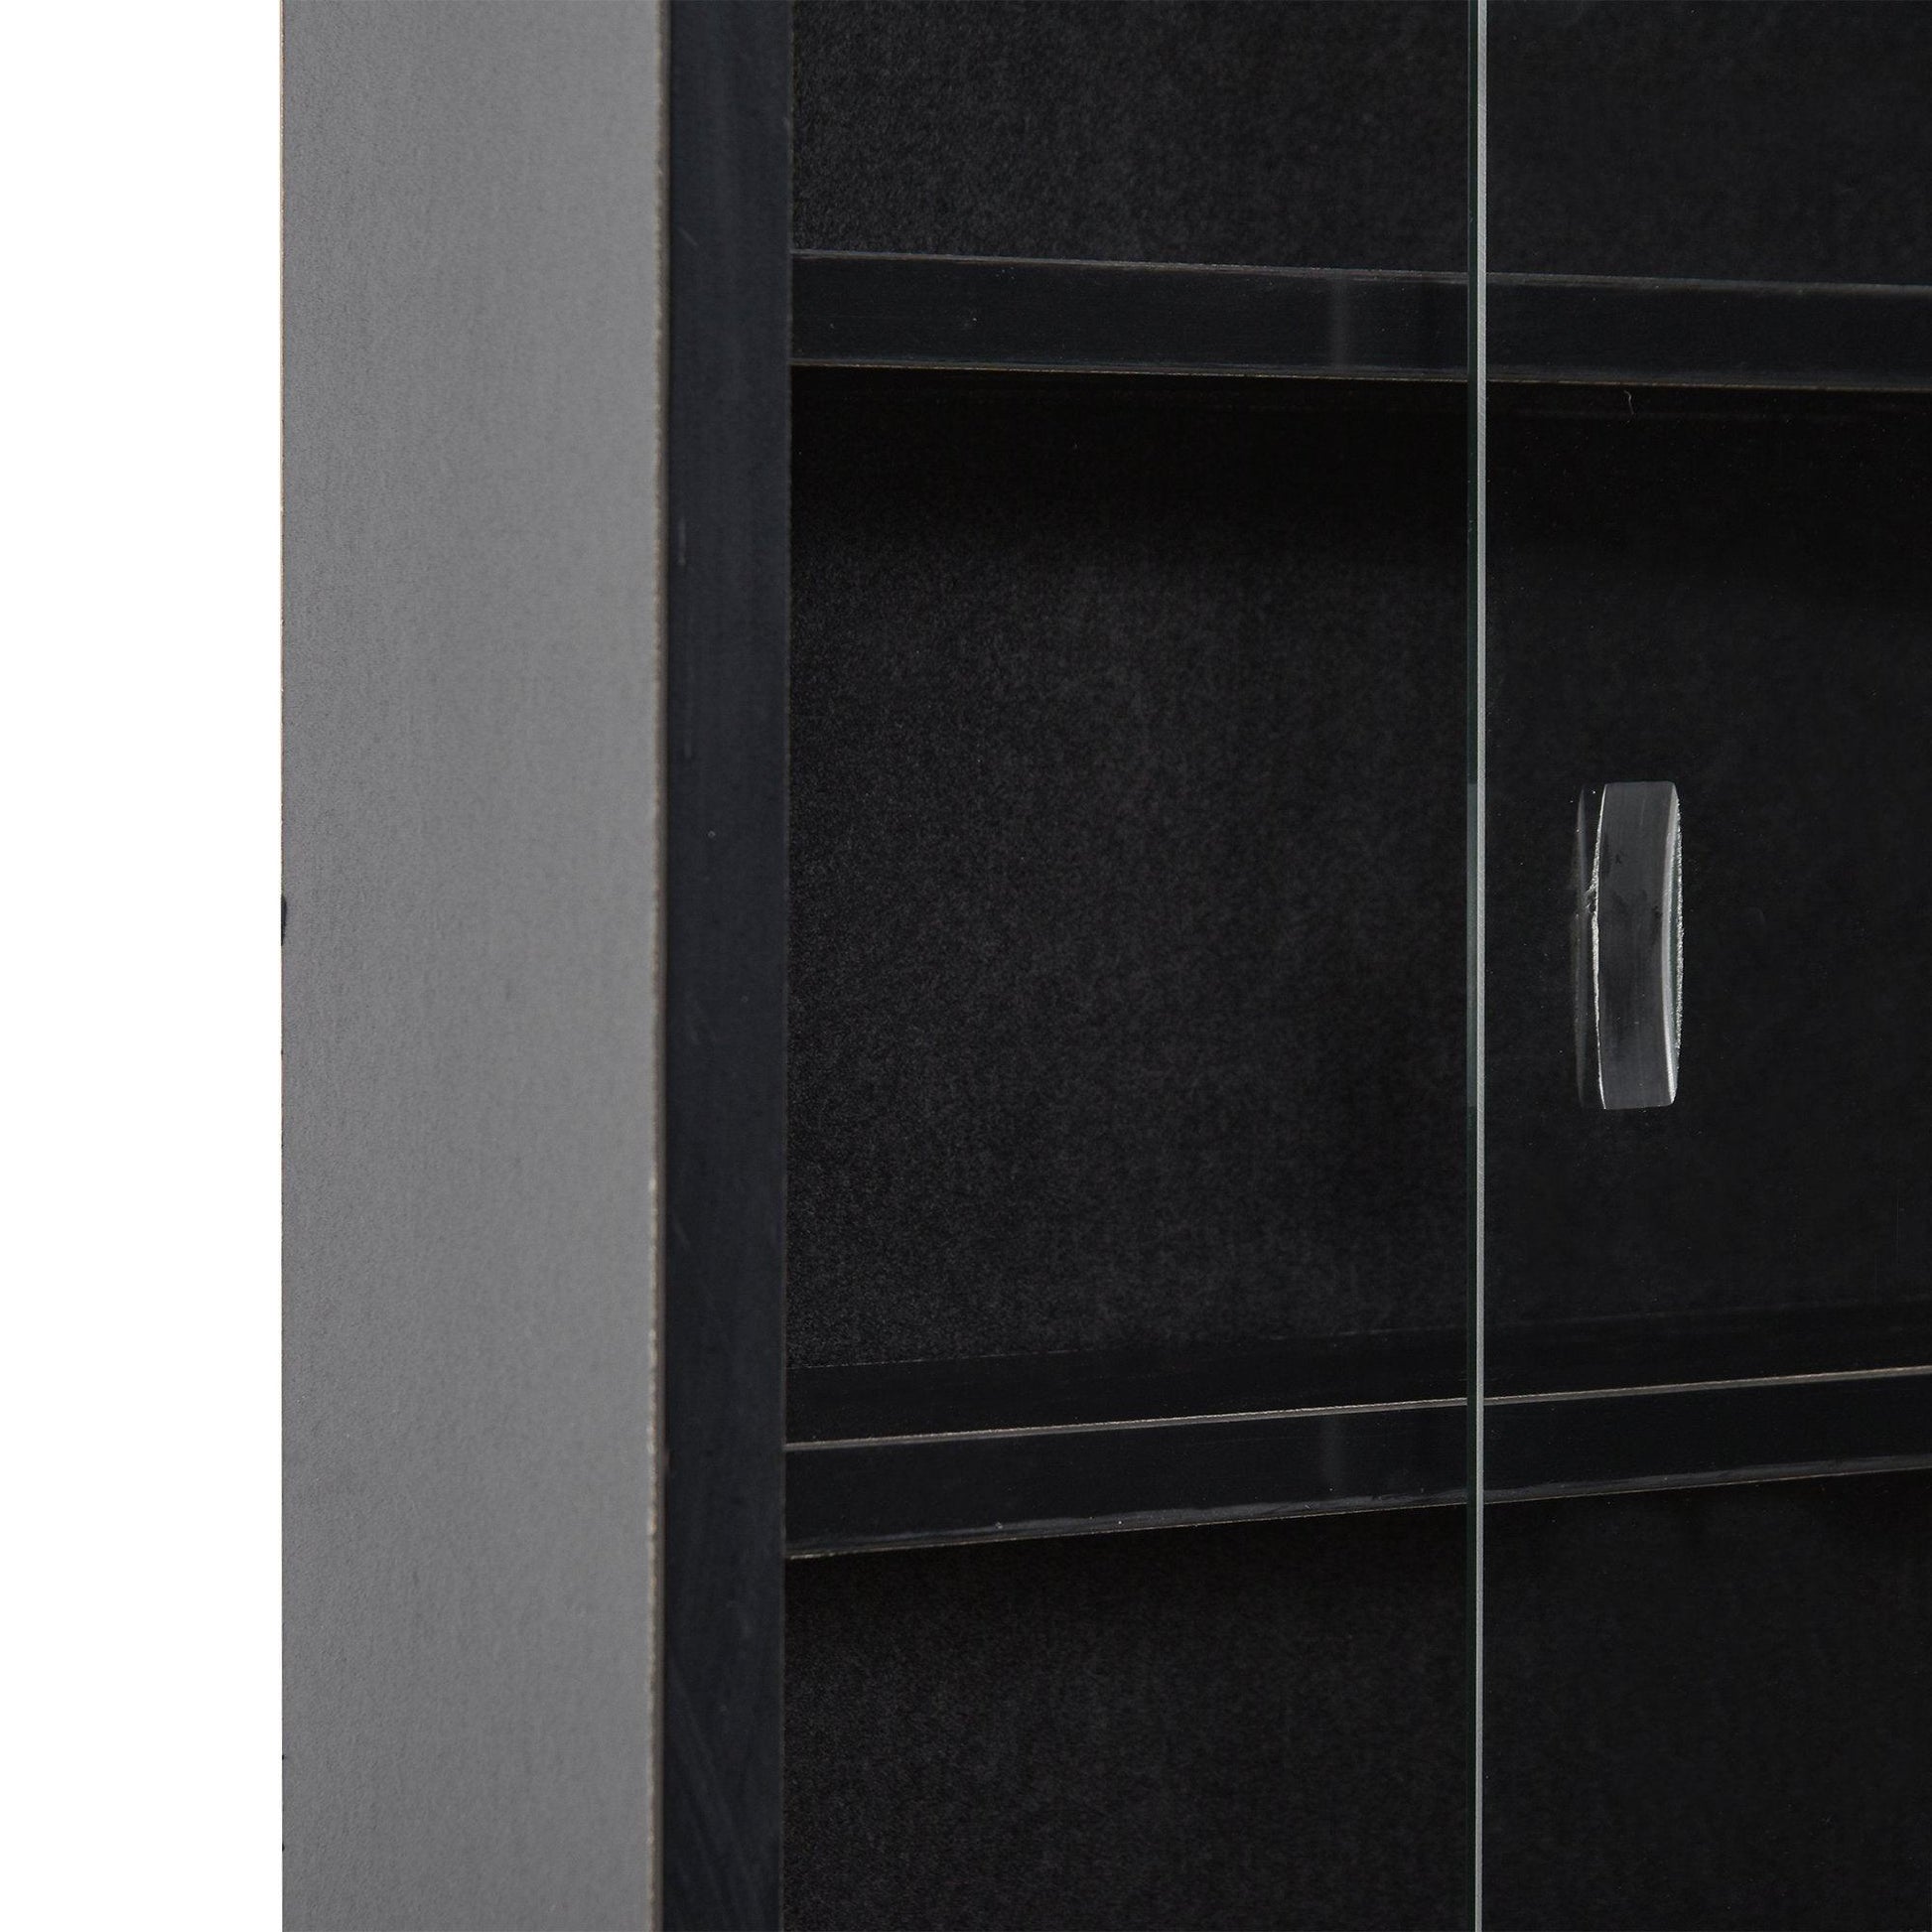 HOMCOM 5-Tier Glass Door Display Cabinet - Sleek Black - ALL4U RETAILER LTD